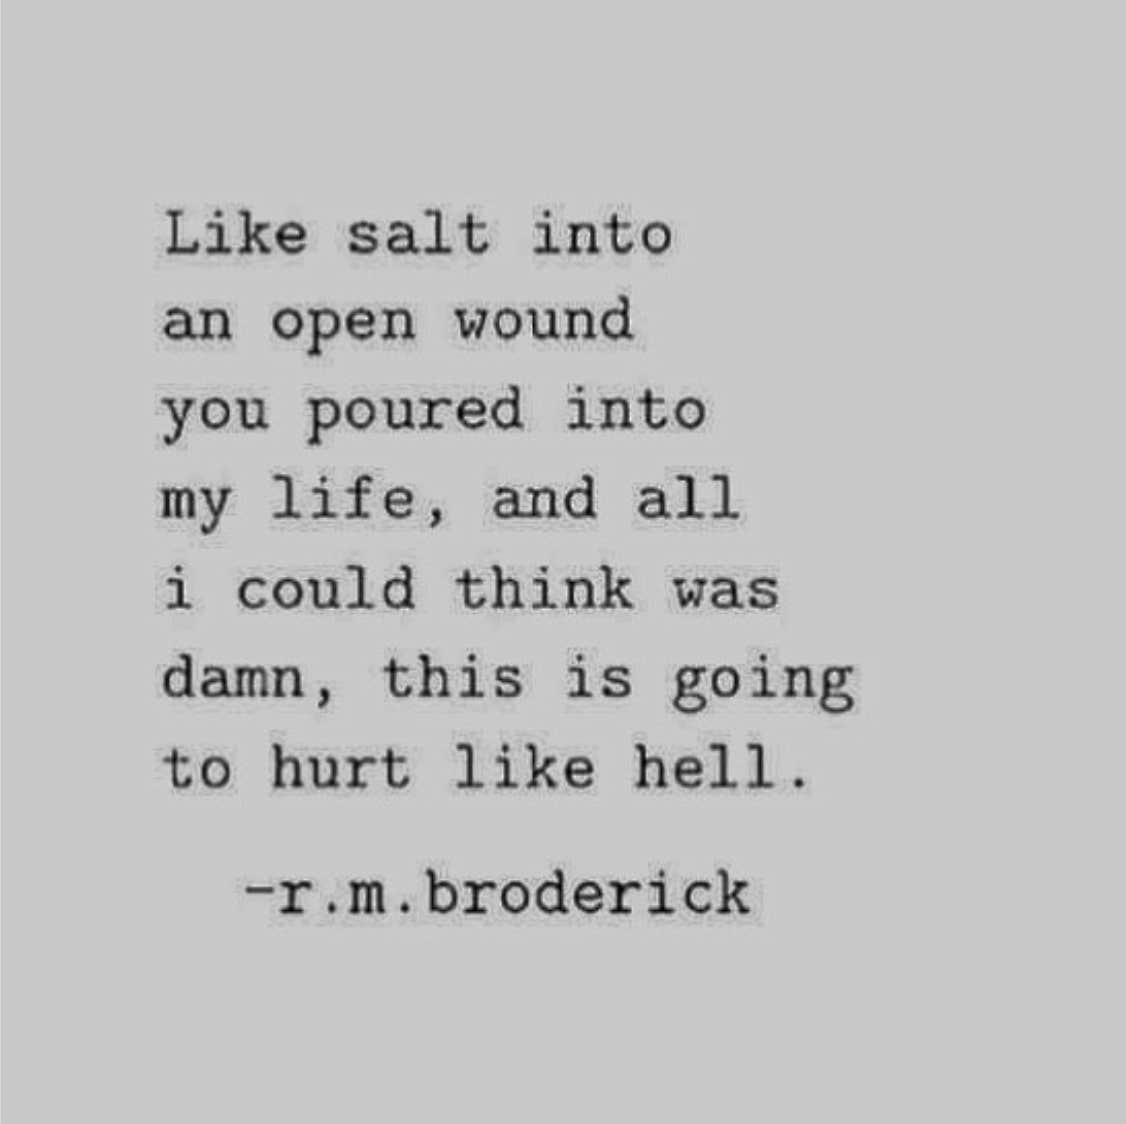 Heartbreaking quotes Instagram Poet R. M. Broderick